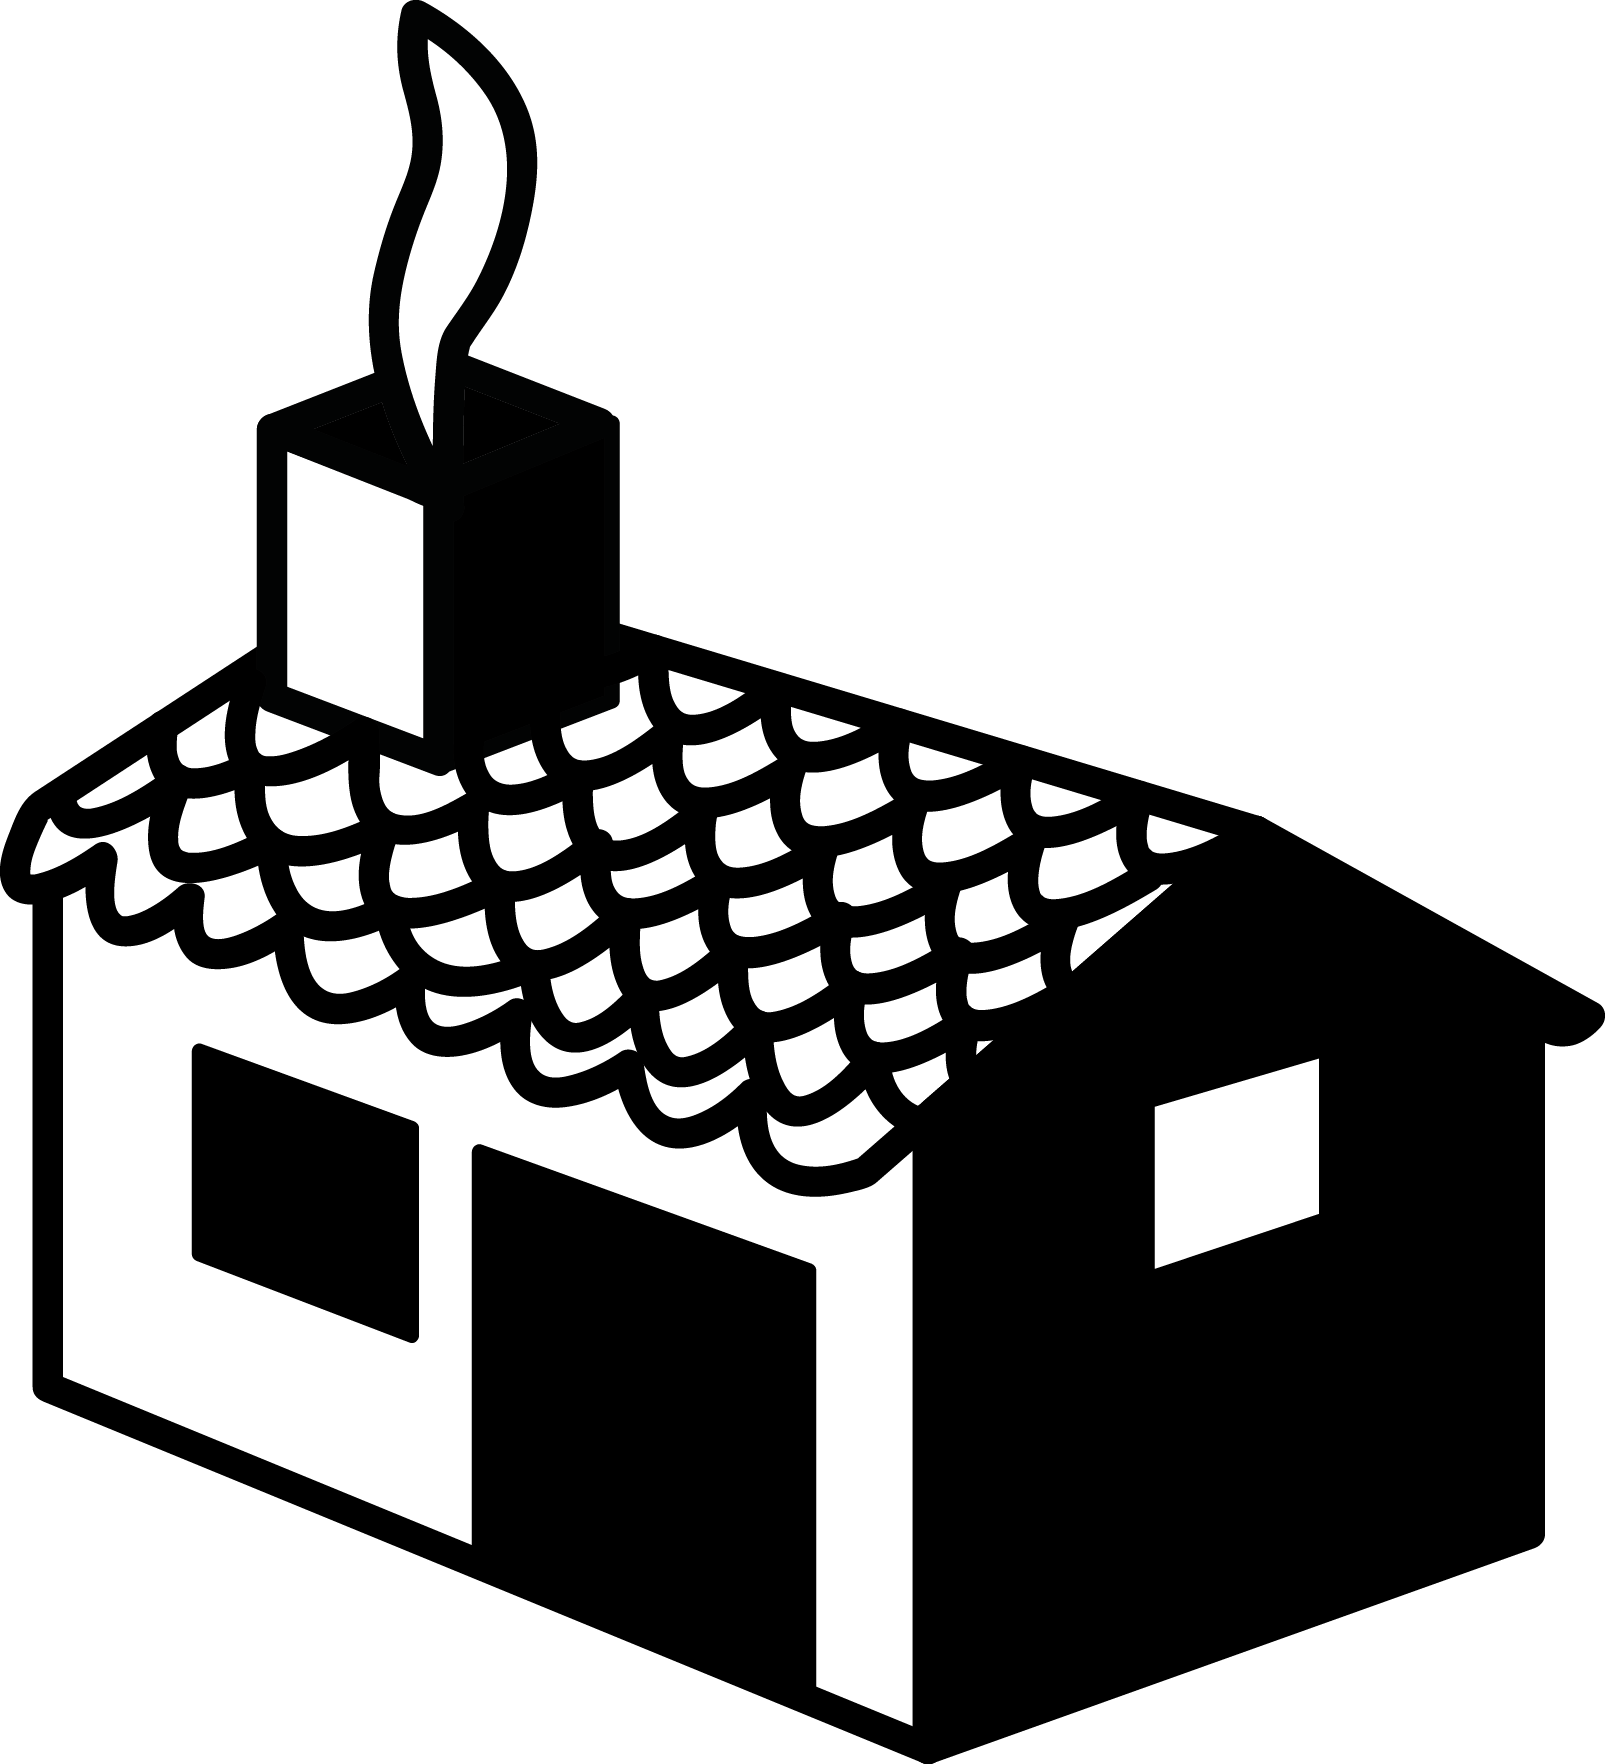 Logo de La Granja Editorial, editorial independiente de libros de arte gráfico.